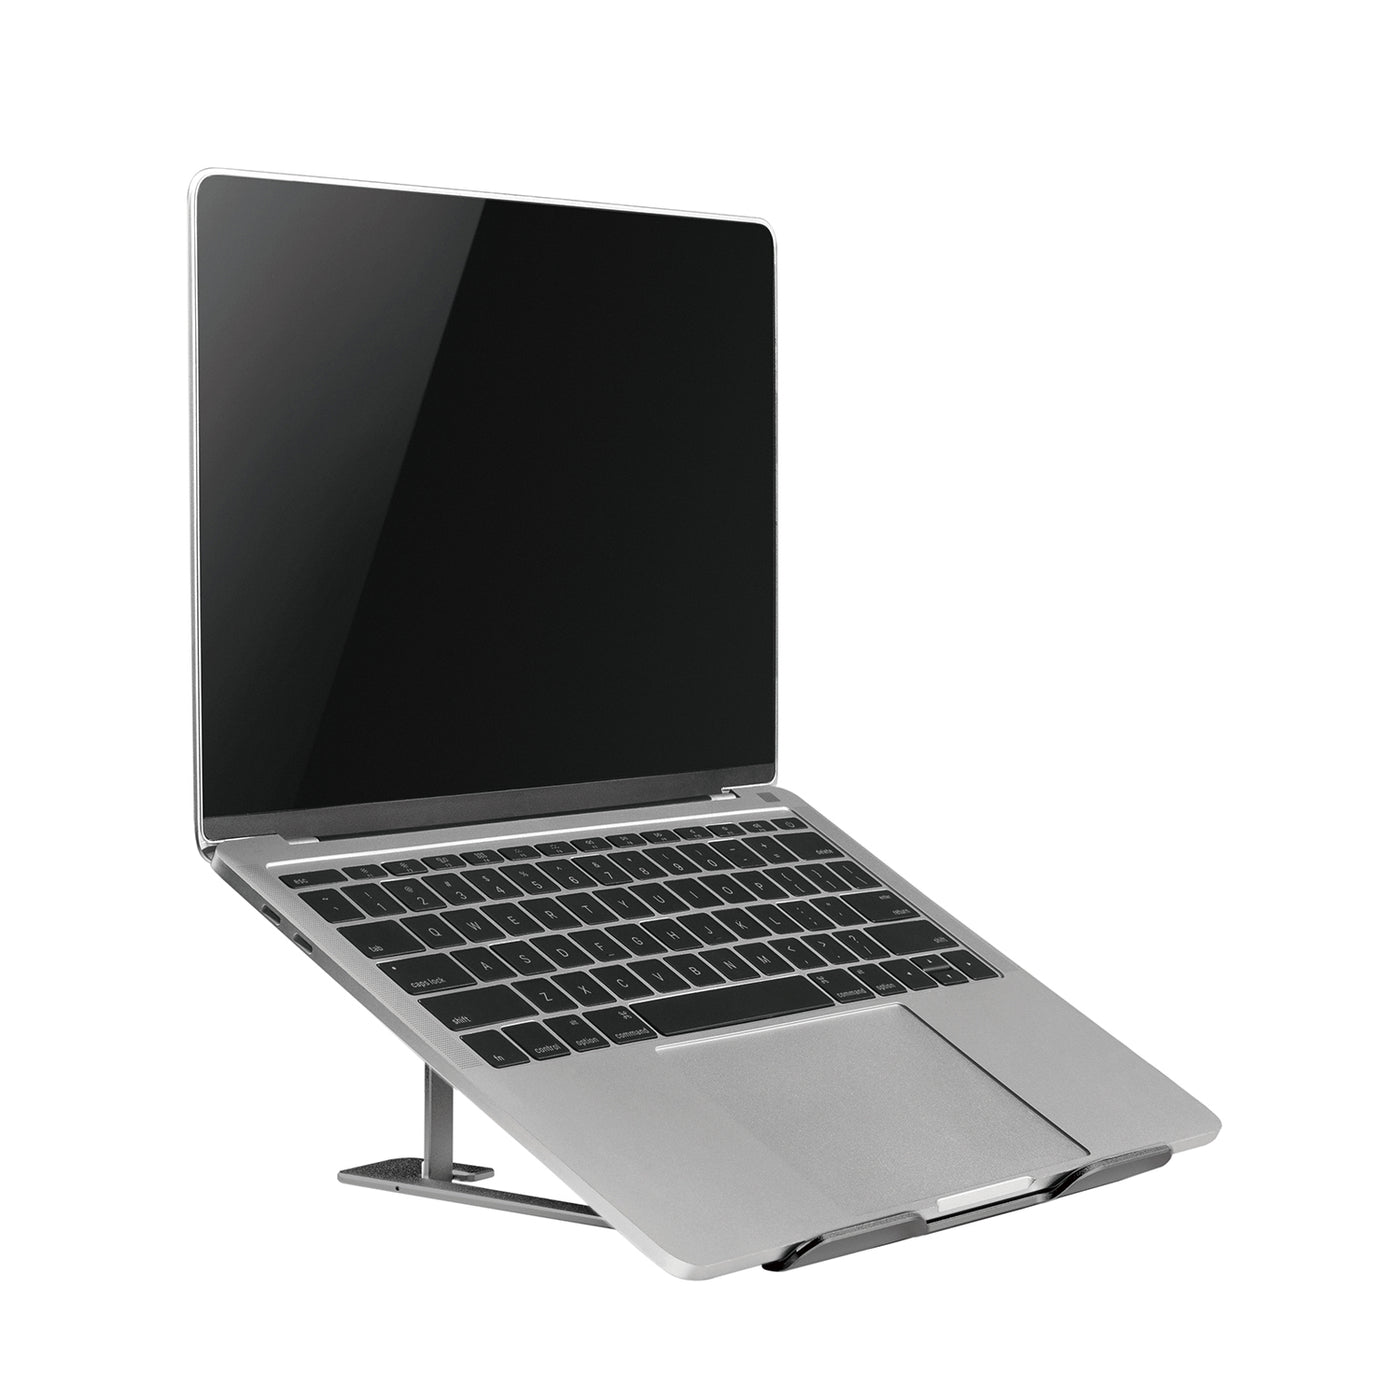 Ergo Office ER-416 G ERGOOFFICE.EU Suporte dobrável ultrafino de alumínio para laptop, cinza, adequado para laptops de 11 a 15 '', ER-416 G